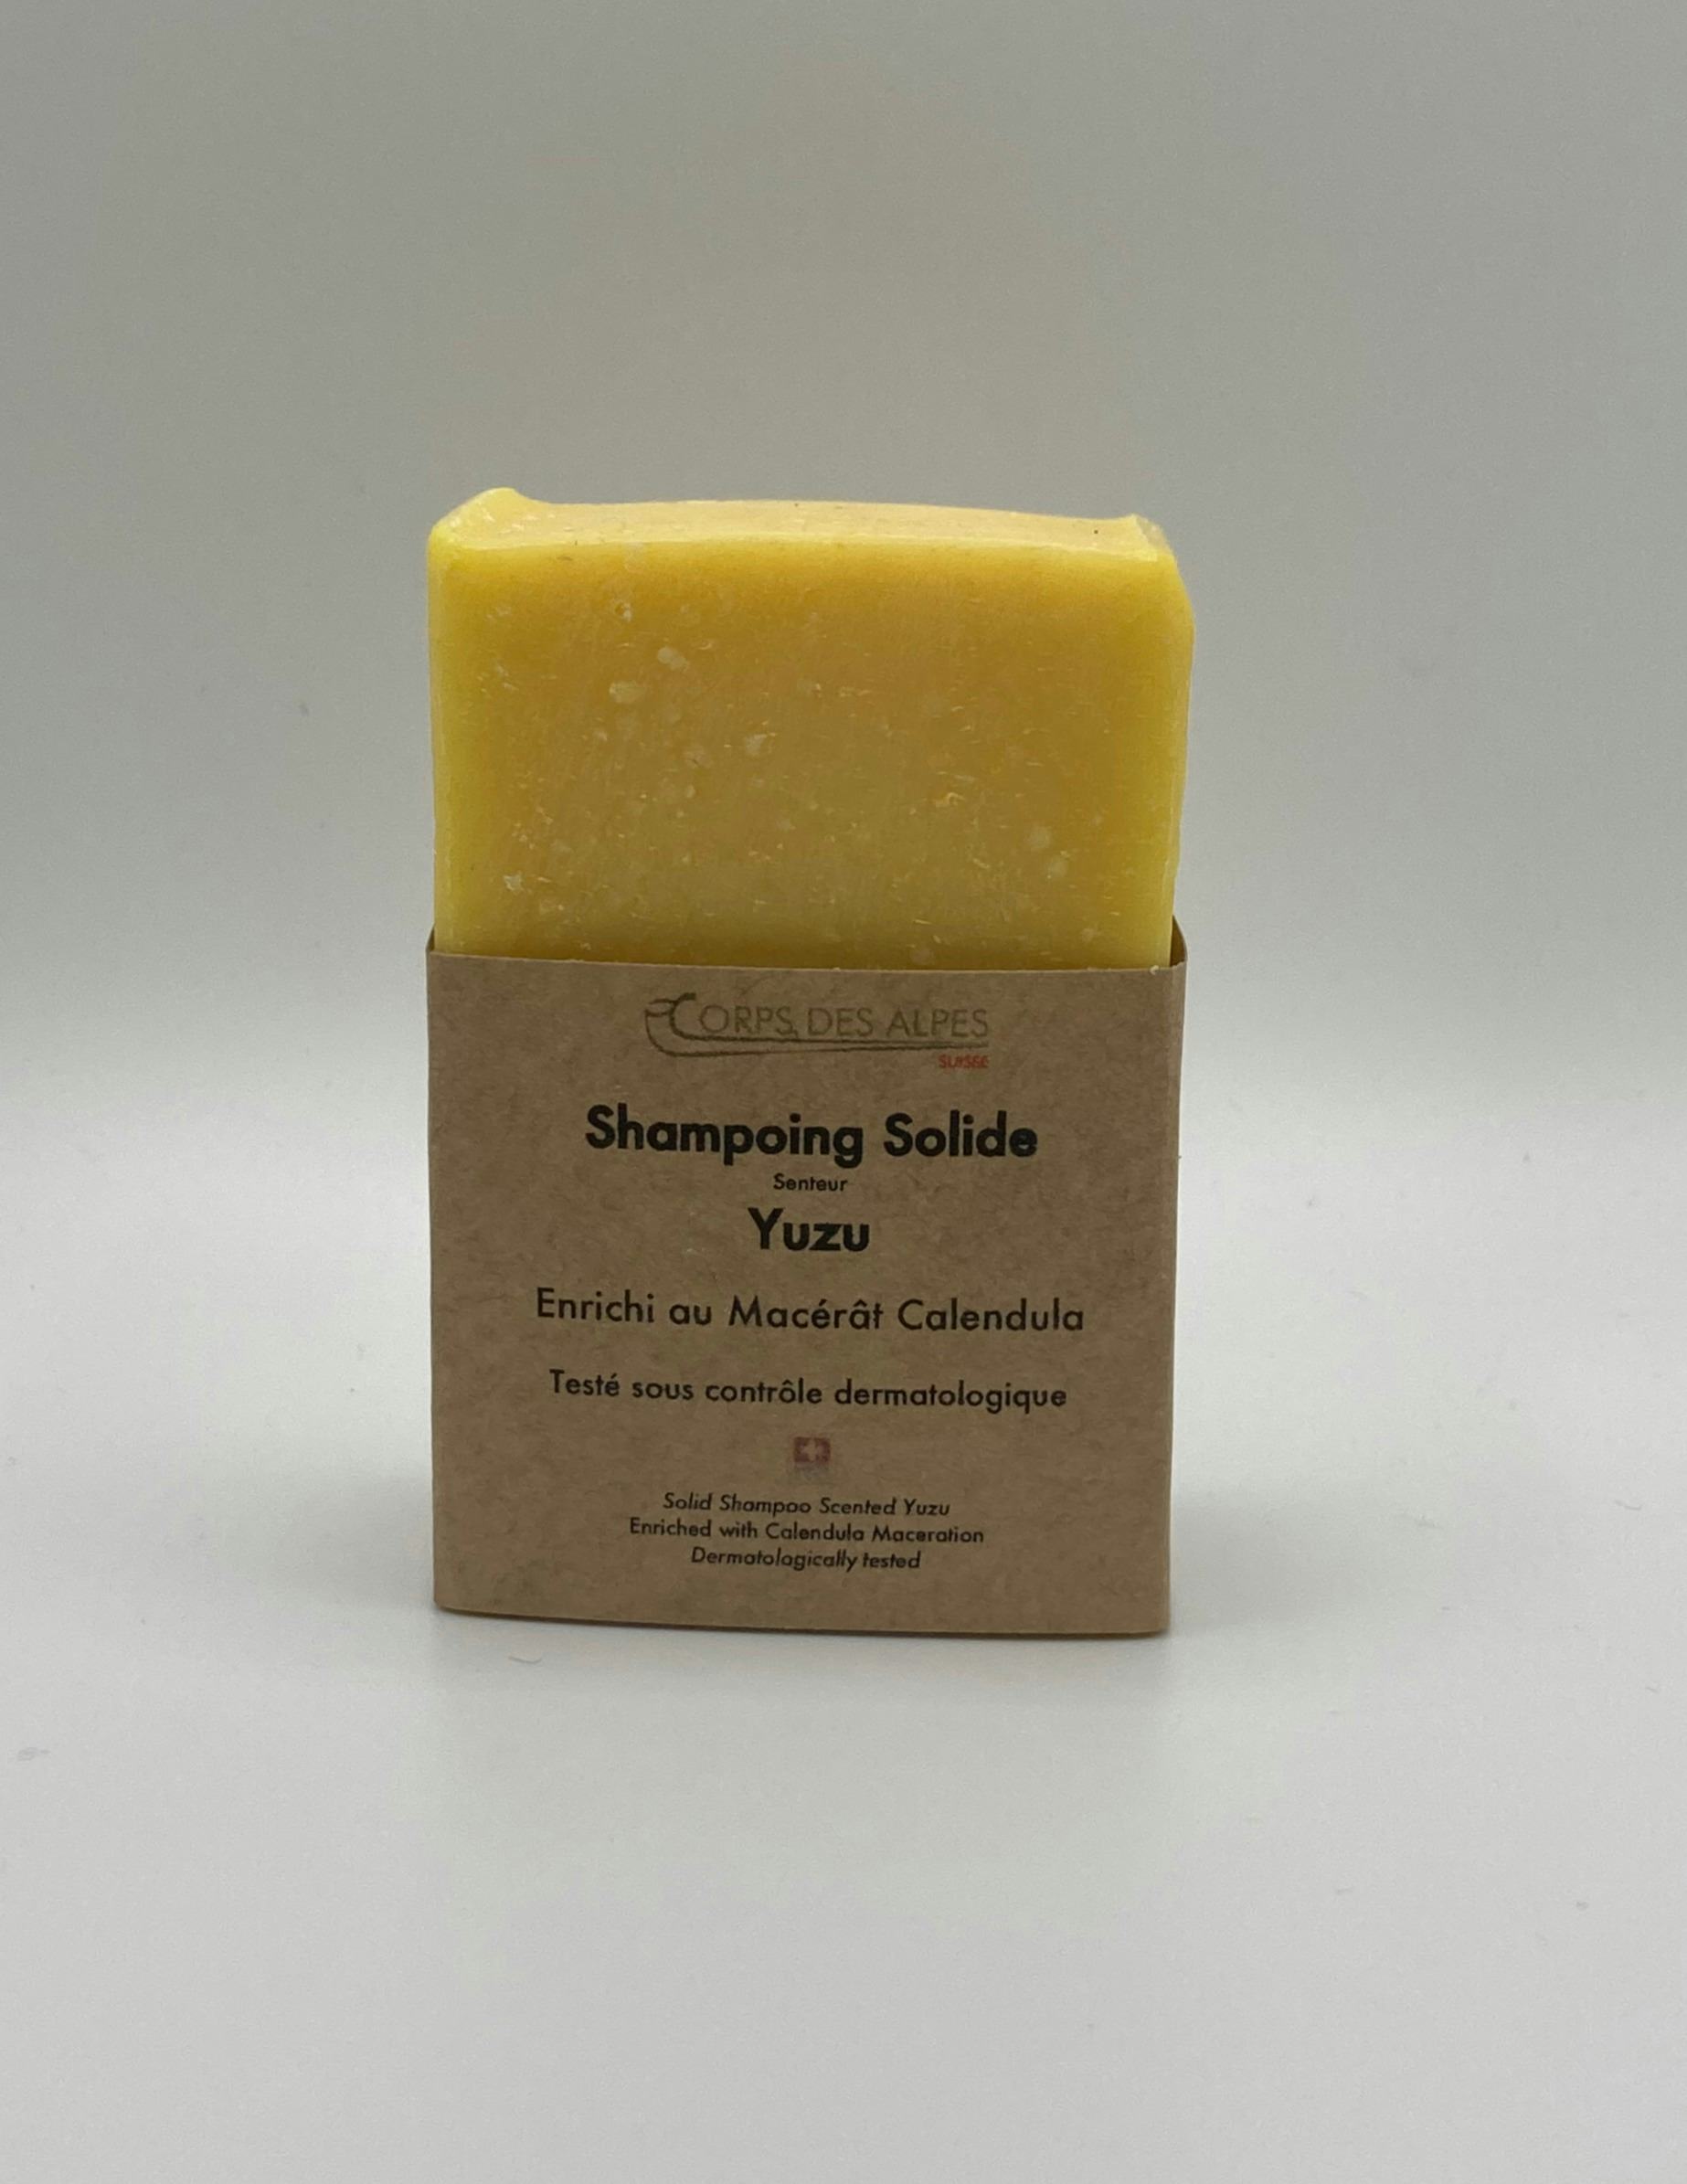 Festes Shampoo mit Yuzu-Duft, handwerkliches Produkt für den Direktverkauf in der Schweiz